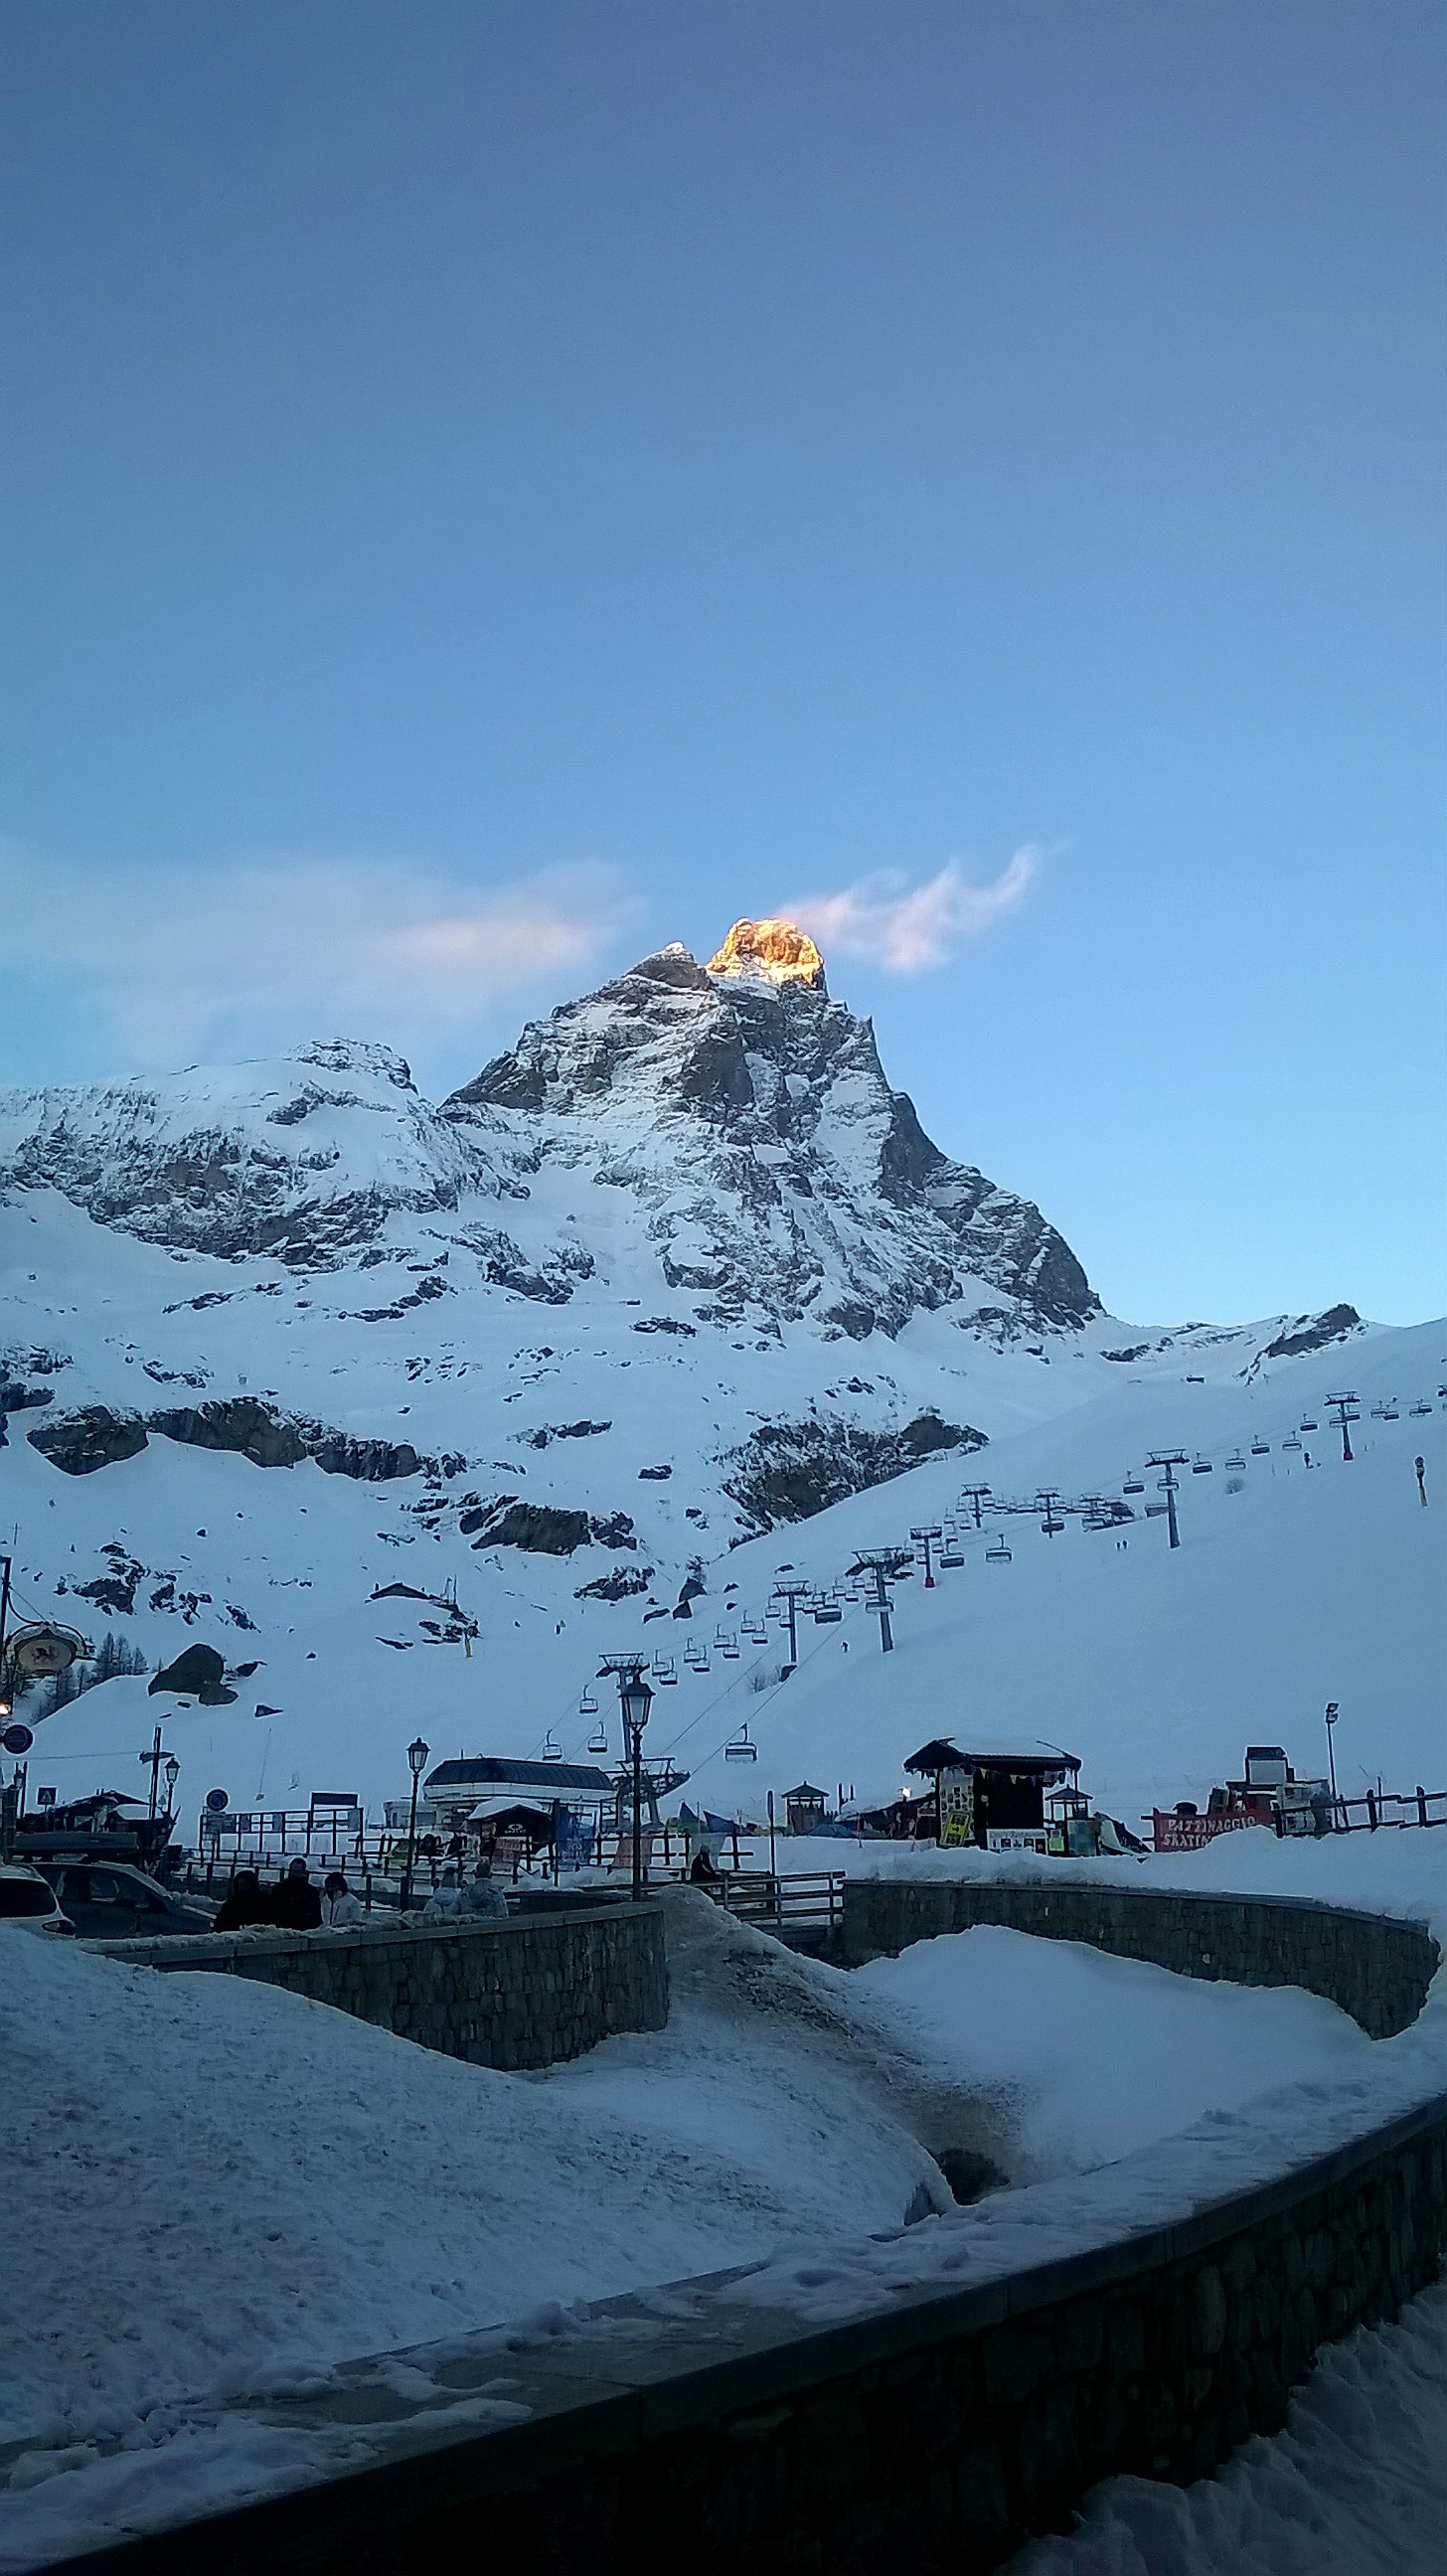 Matterhorn on fire, Breuil-Cervinia Valtournenche